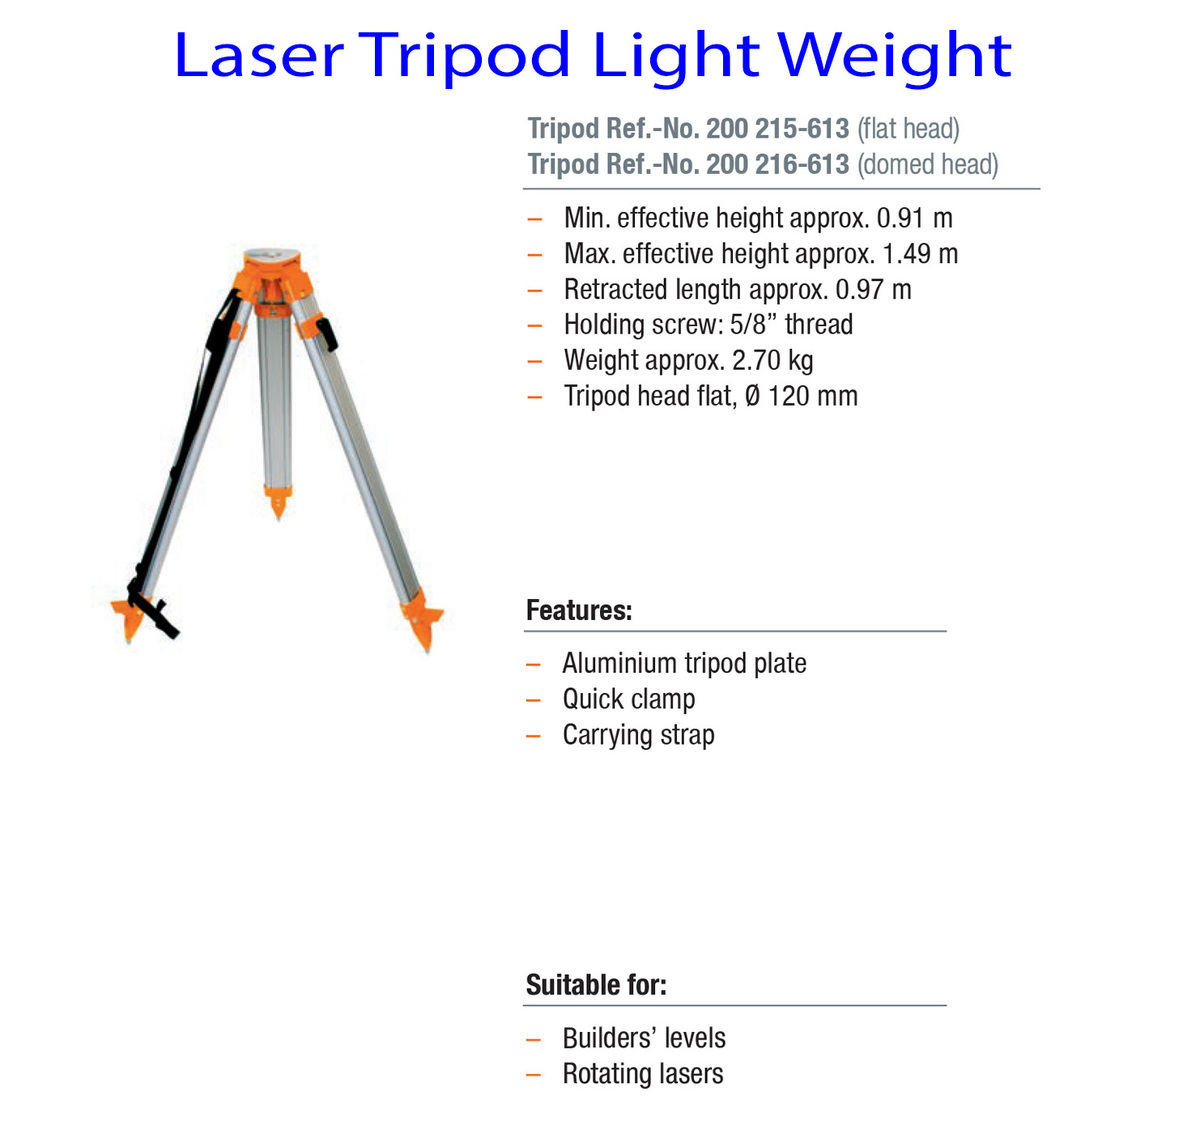 Laser-Tripod-Light-Weight-info.jpg#asset